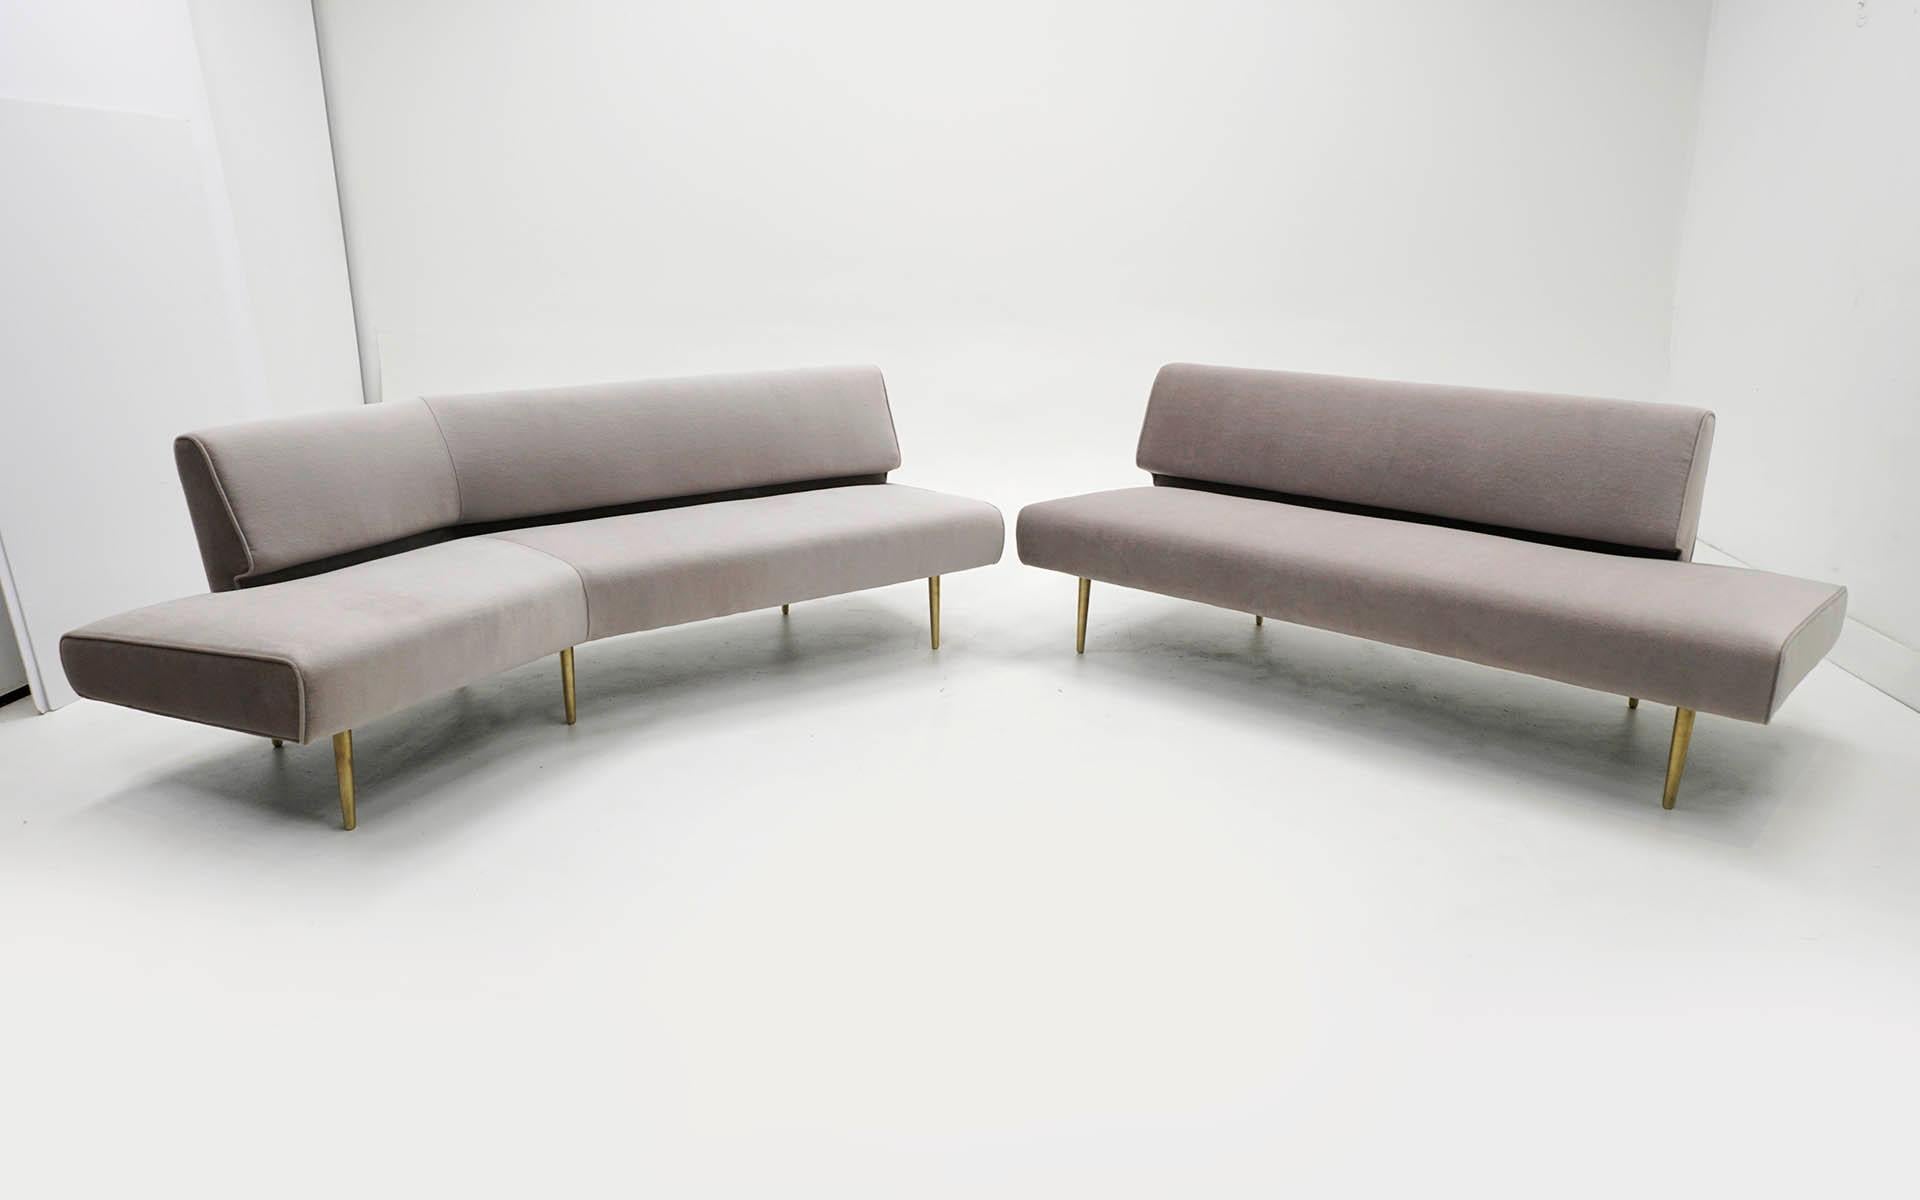 Zweiteiliges Dunbar-Sofa von Edward Wormley:: armlos:: Messingbeine:: Modelle 4756 & 4828 (Mitte des 20. Jahrhunderts)